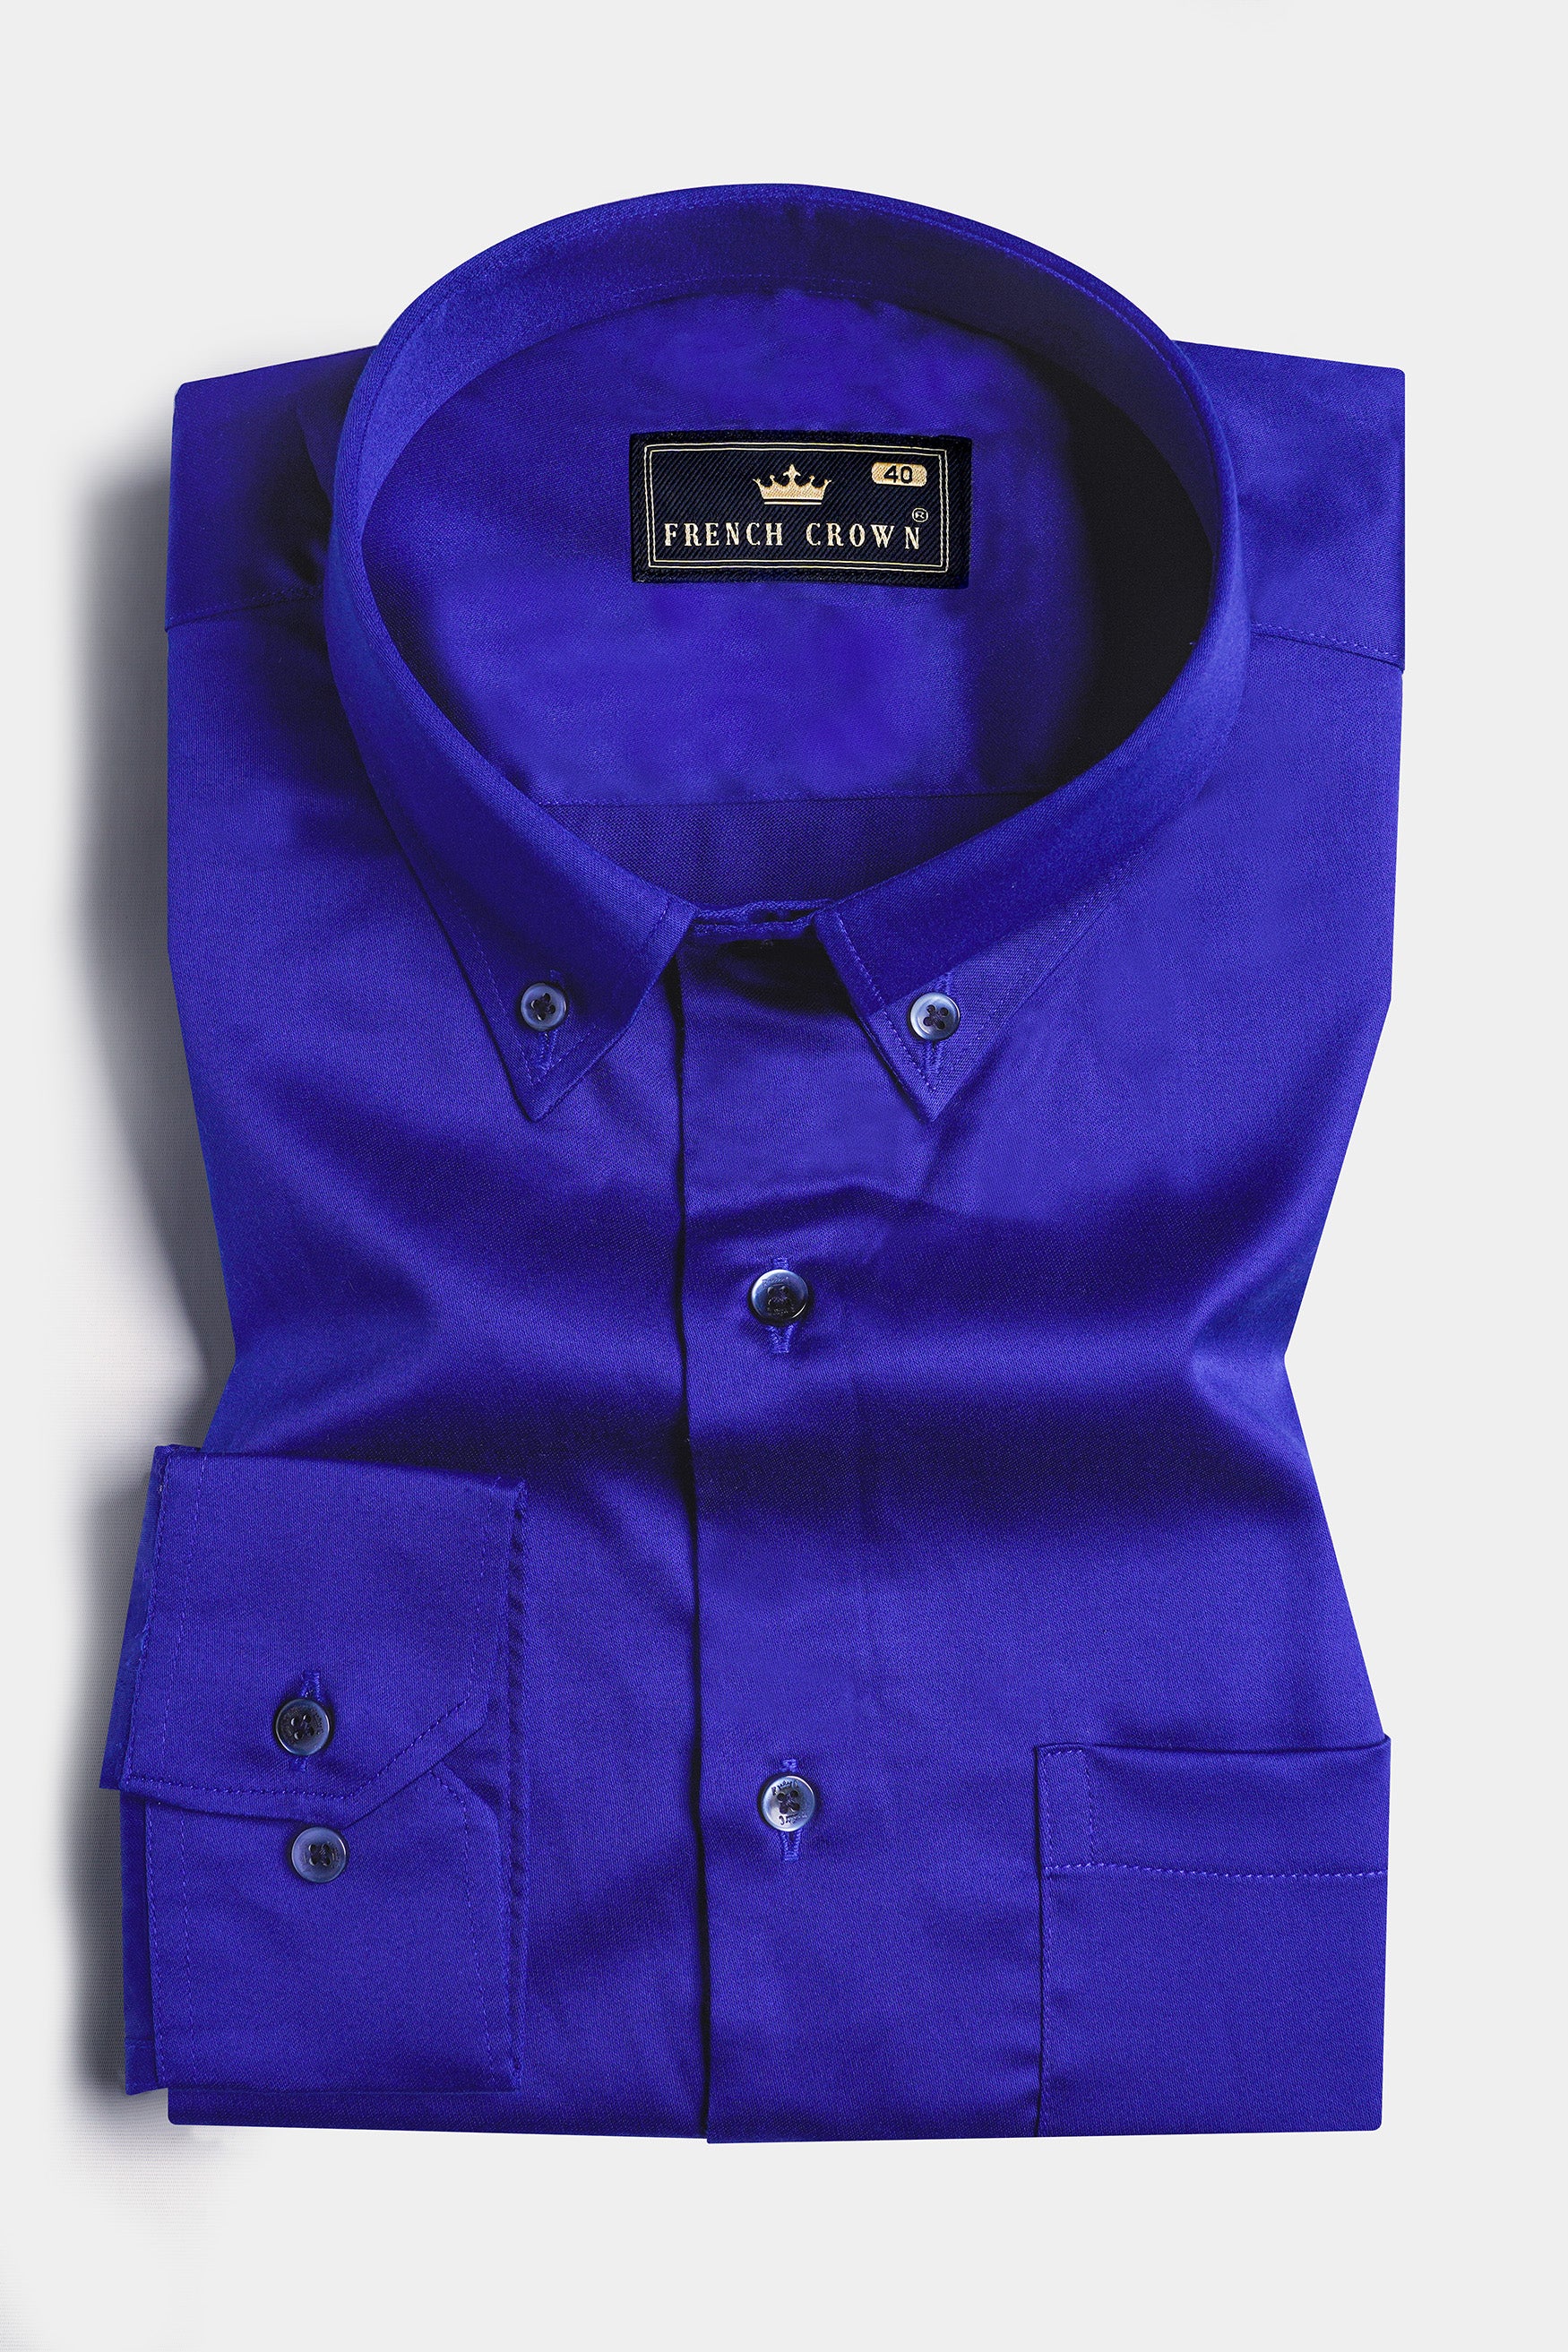 Lapis Blue Subtle Sheen Super Soft Premium Cotton Button Down Shirt